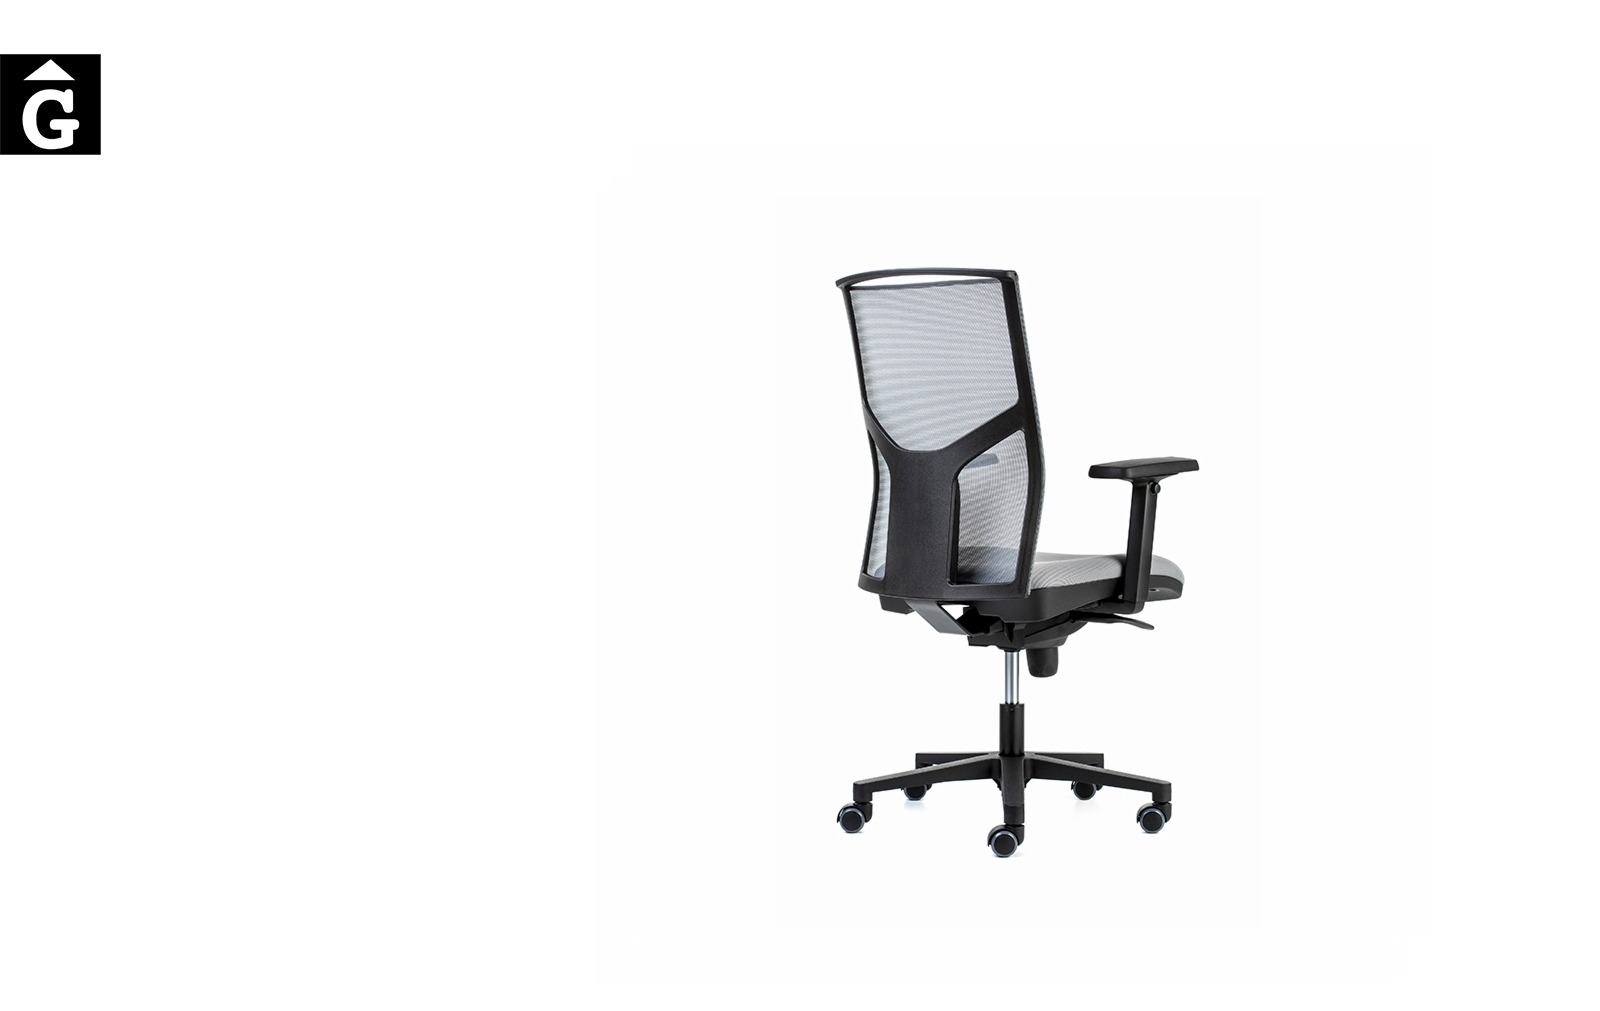 Cadira oficina negra Akita Pro | Darrera | Dile | mobiliari d’oficina molt interessant | Dileoffice | mobles Gifreu | botiga | Contract | Mobles nous oficina